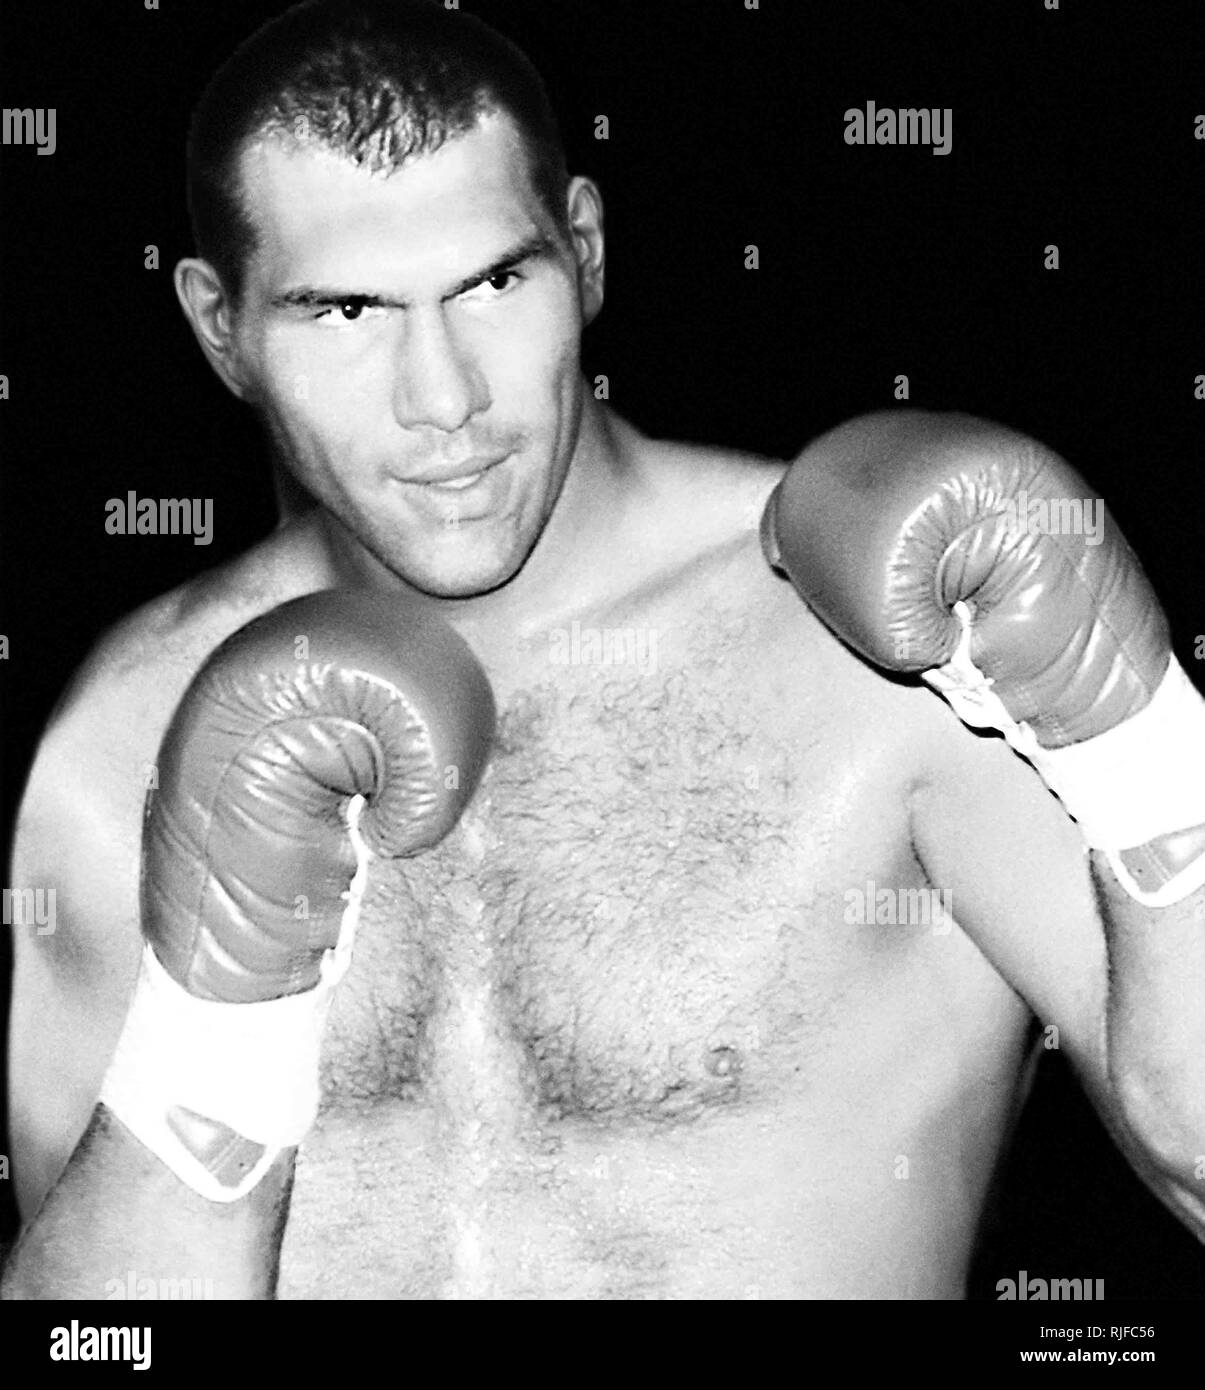 1997, boxe poids lourd russe Nikolaj Valuev dans le début de sa carrière. Photo prise avec un appareil photo Nikon FM2, nouvelle photographie avec un scanner. Banque D'Images